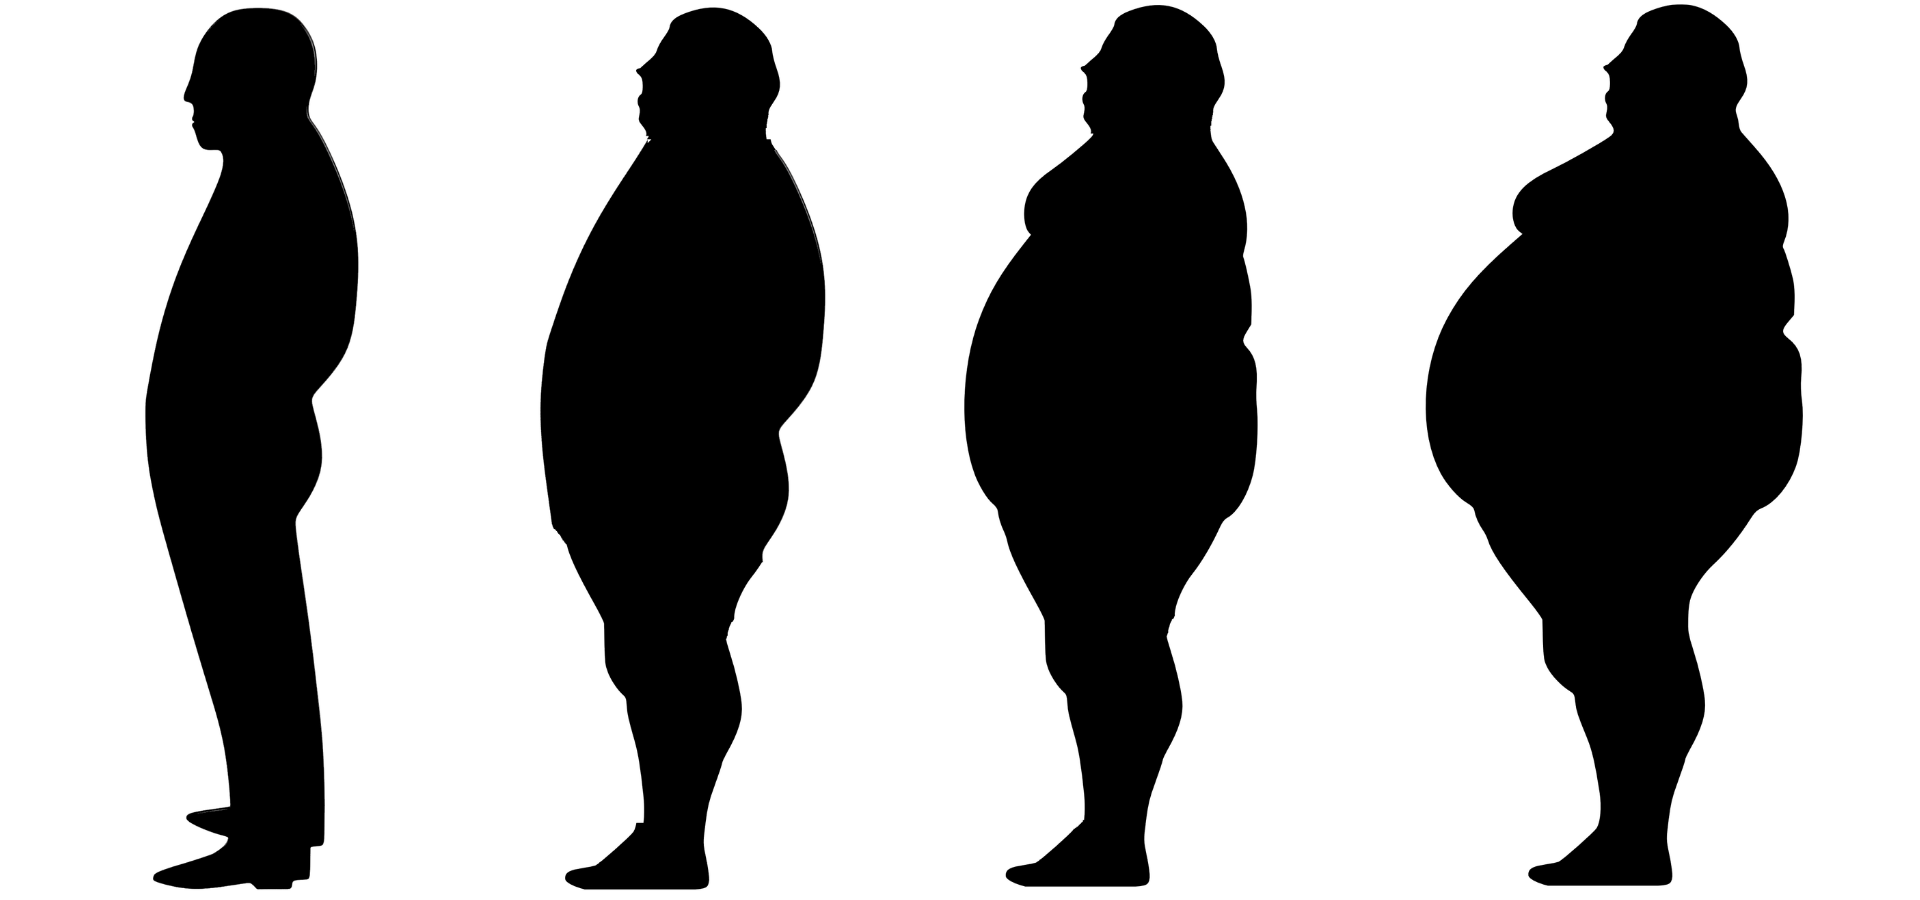 Верхняя часть толстая. Ожирение. Толстый человек в профиль. Силуэты толстых людей. Толстый человек силуэт.